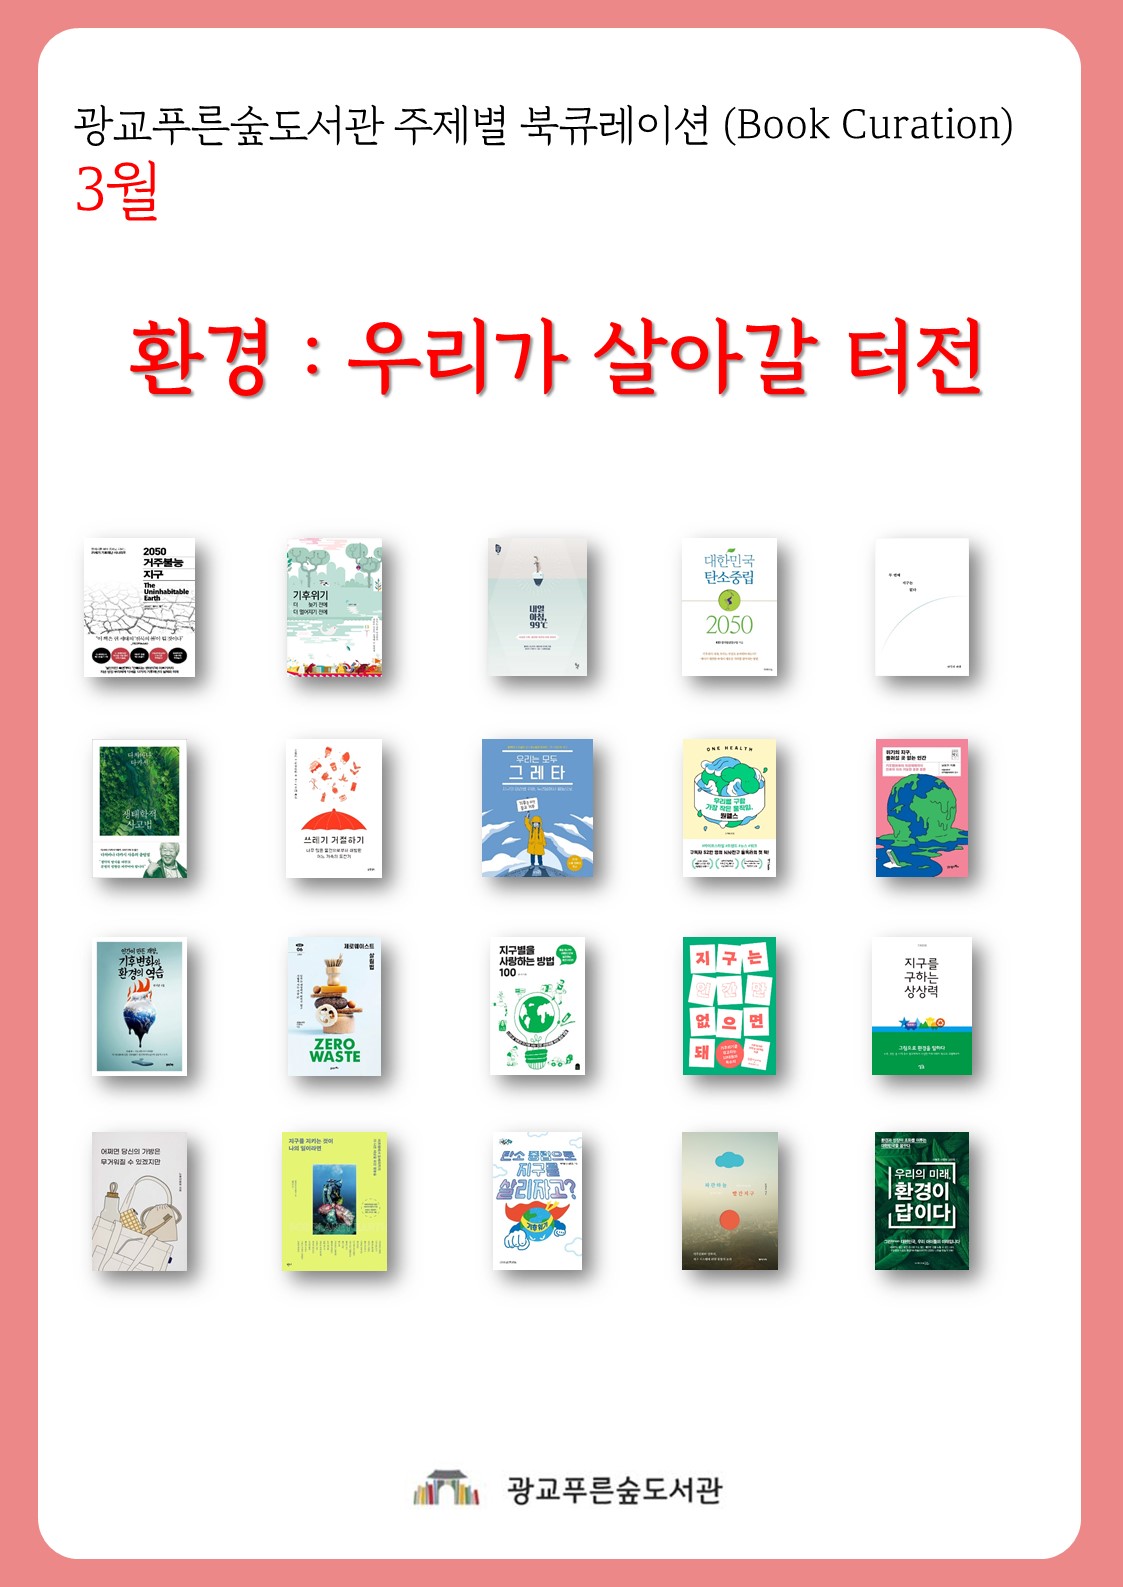 광교푸른숲도서관주제별북큐레이션안내문(3월).jpg